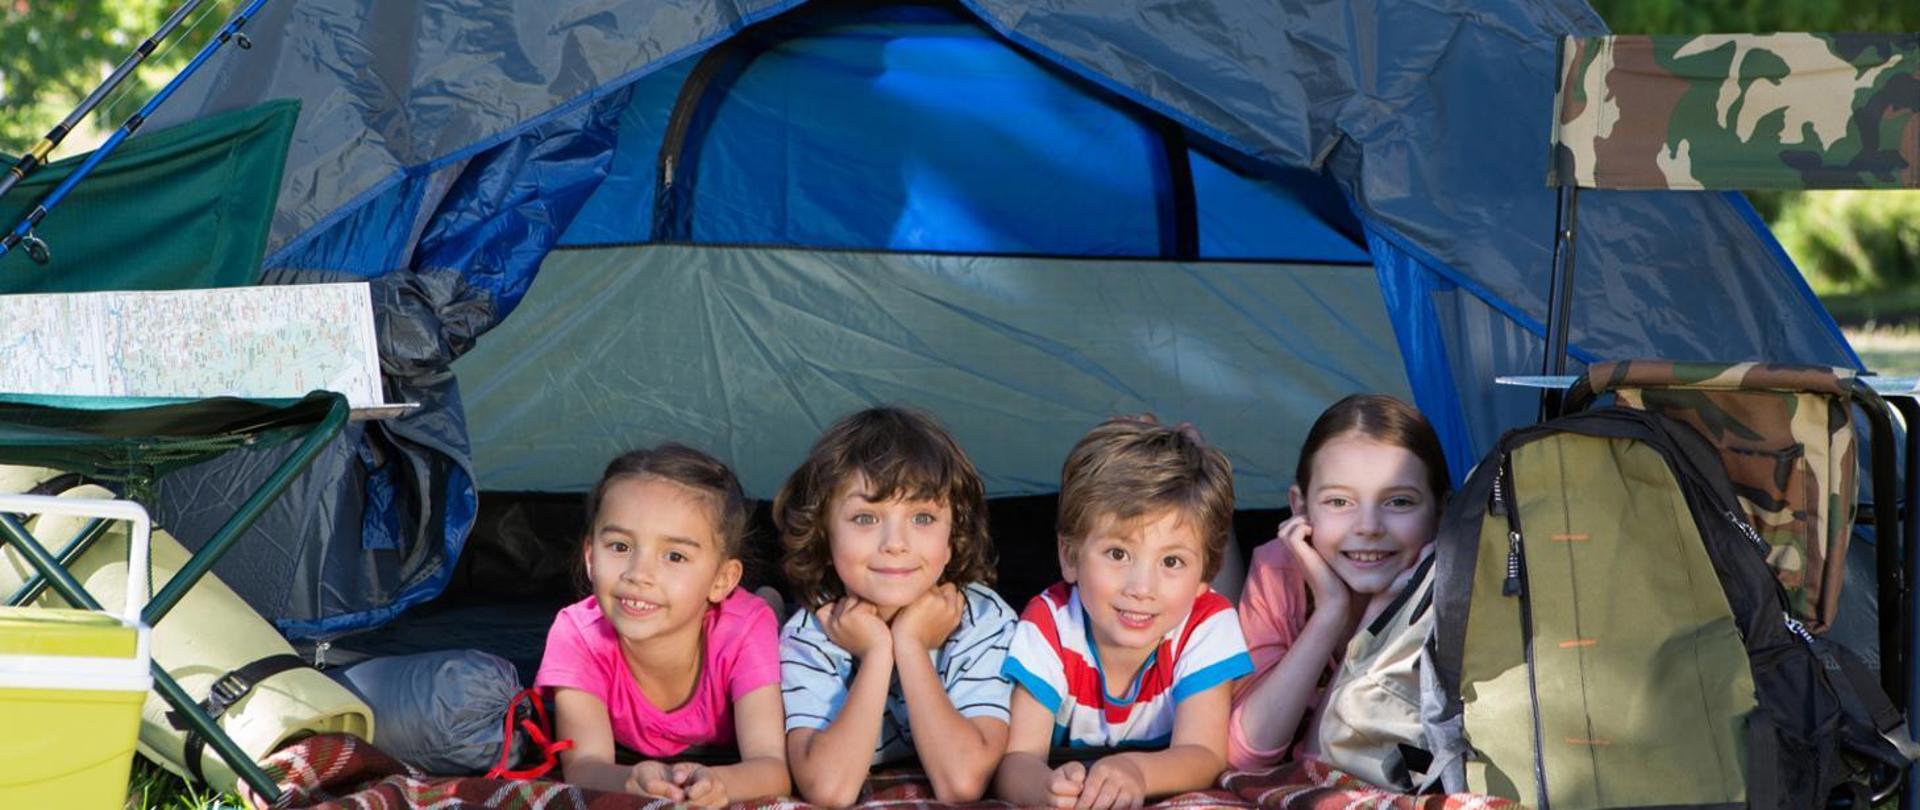 Na zdjęciu widać czwórkę dzieci leżących na brzuchach pod namiotem.